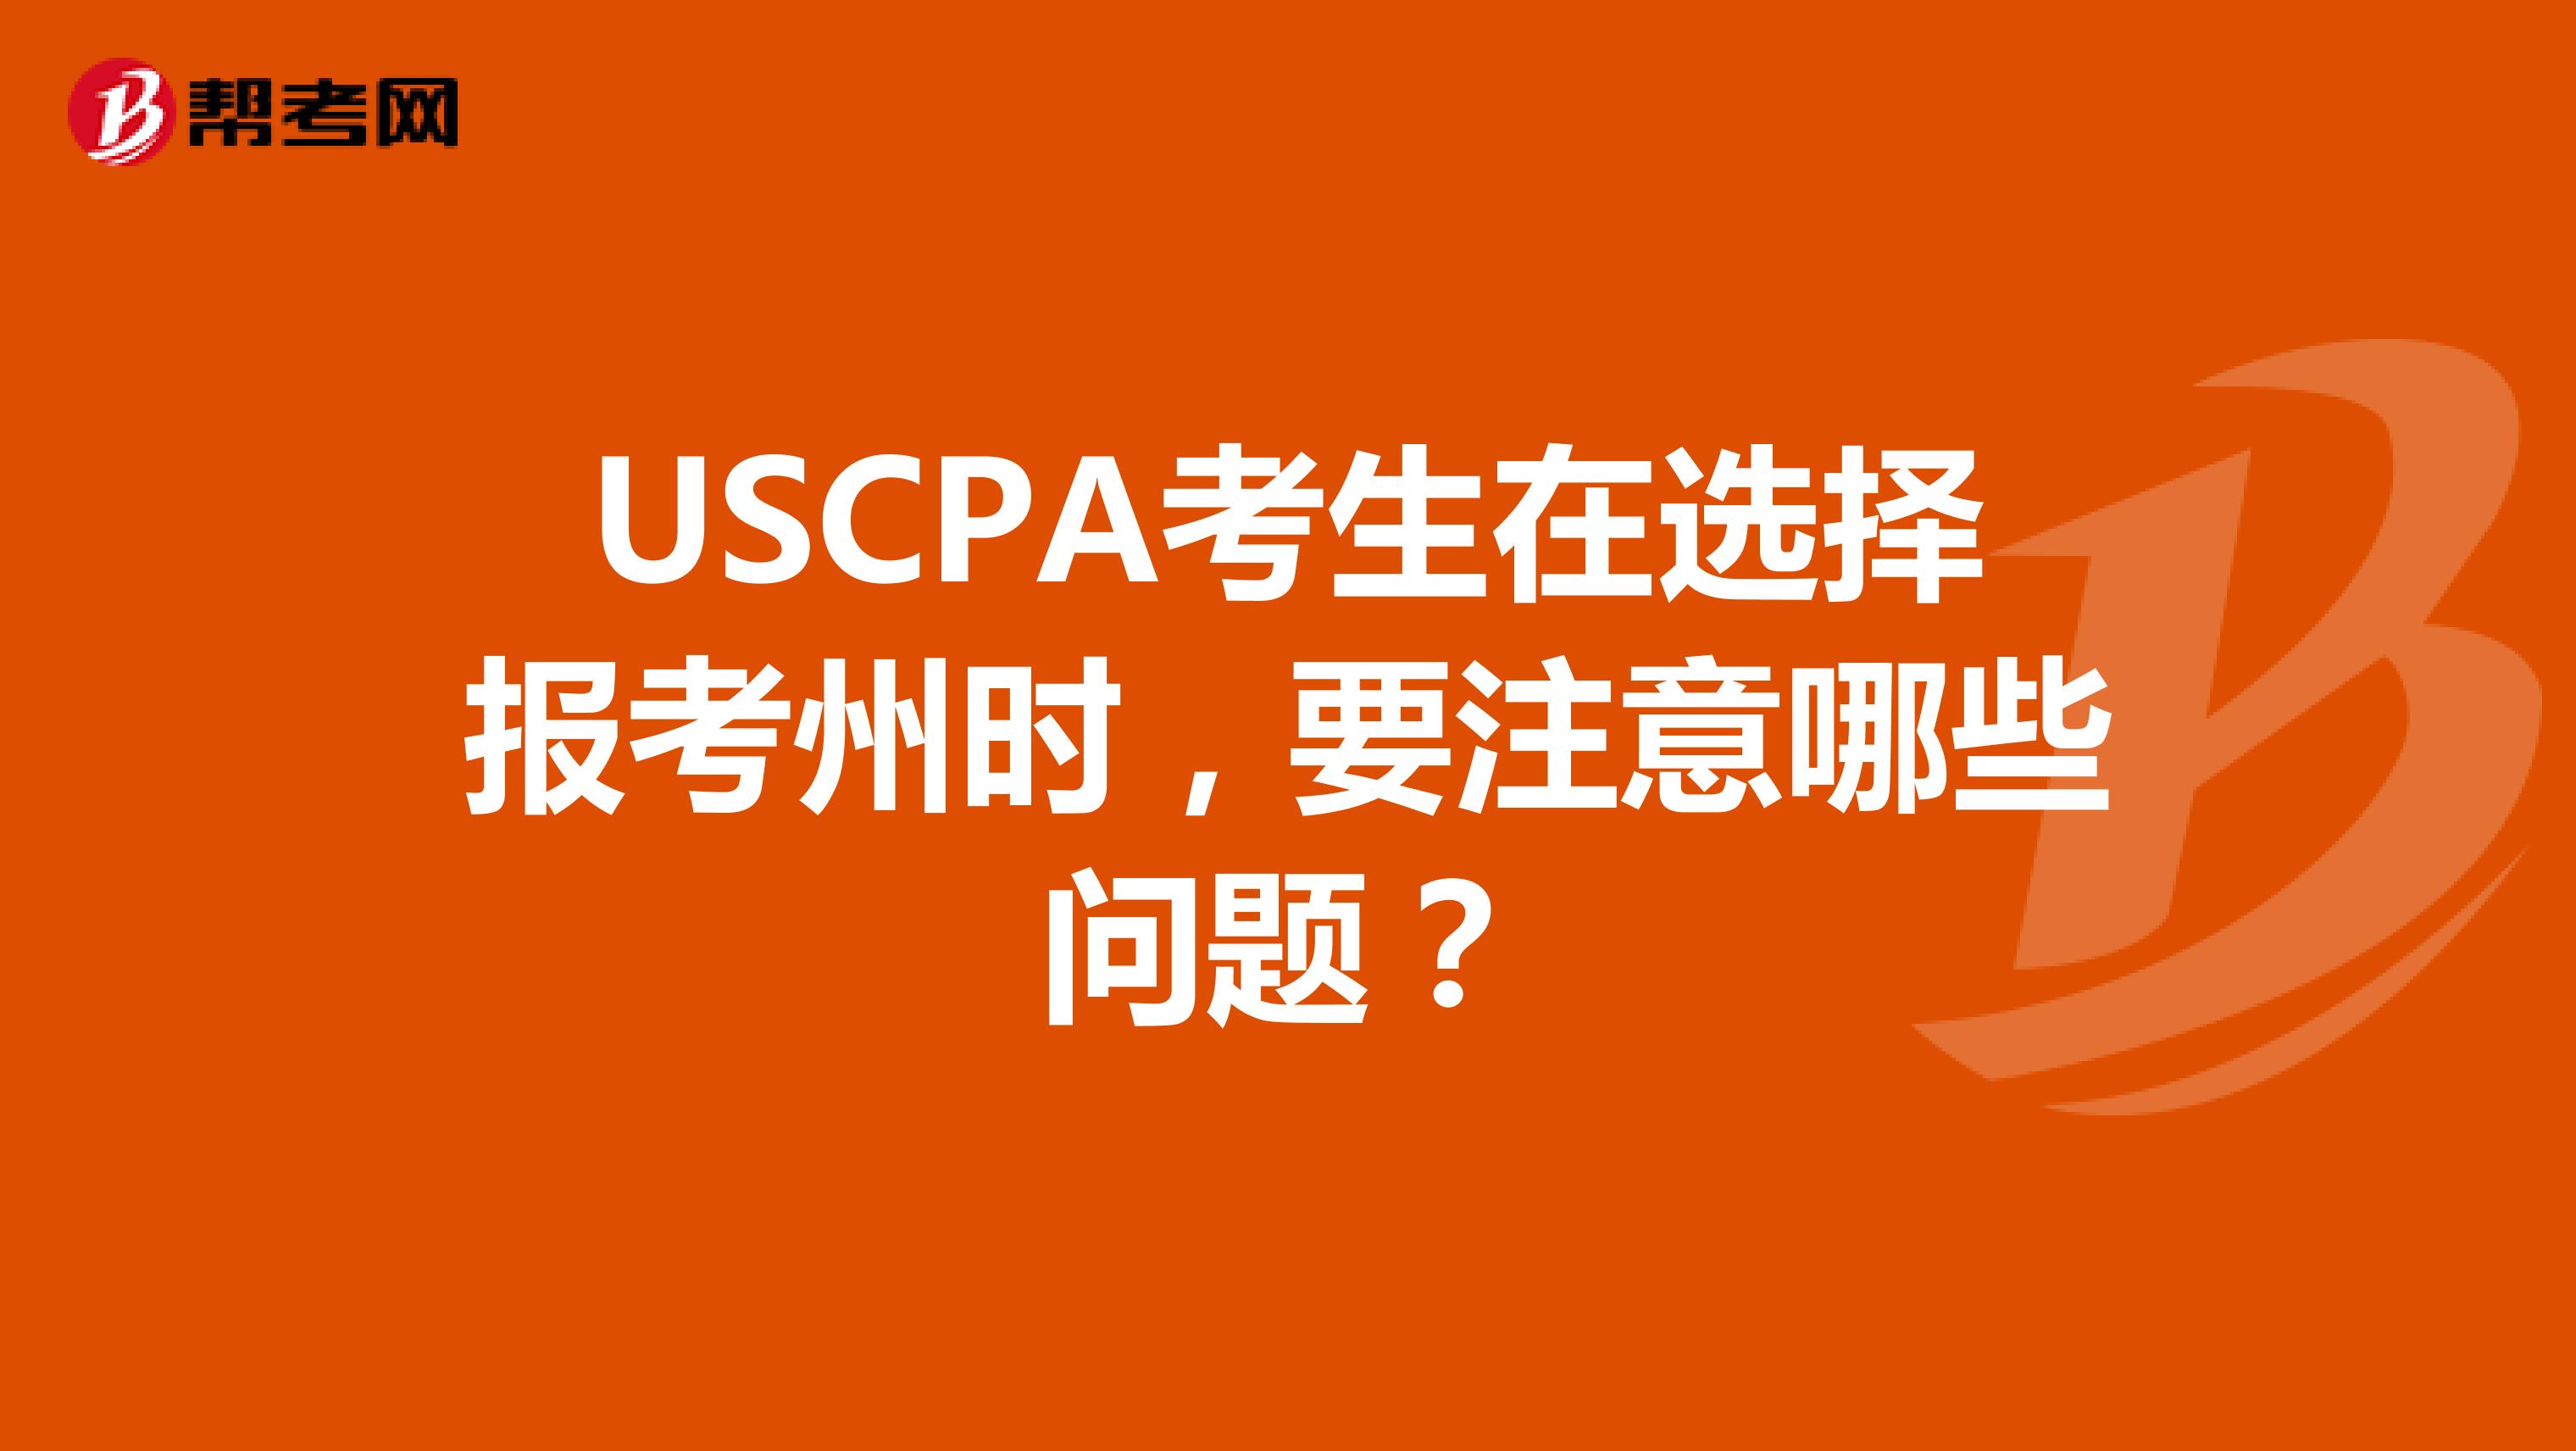 USCPA考生在选择报考州时，要注意哪些问题？